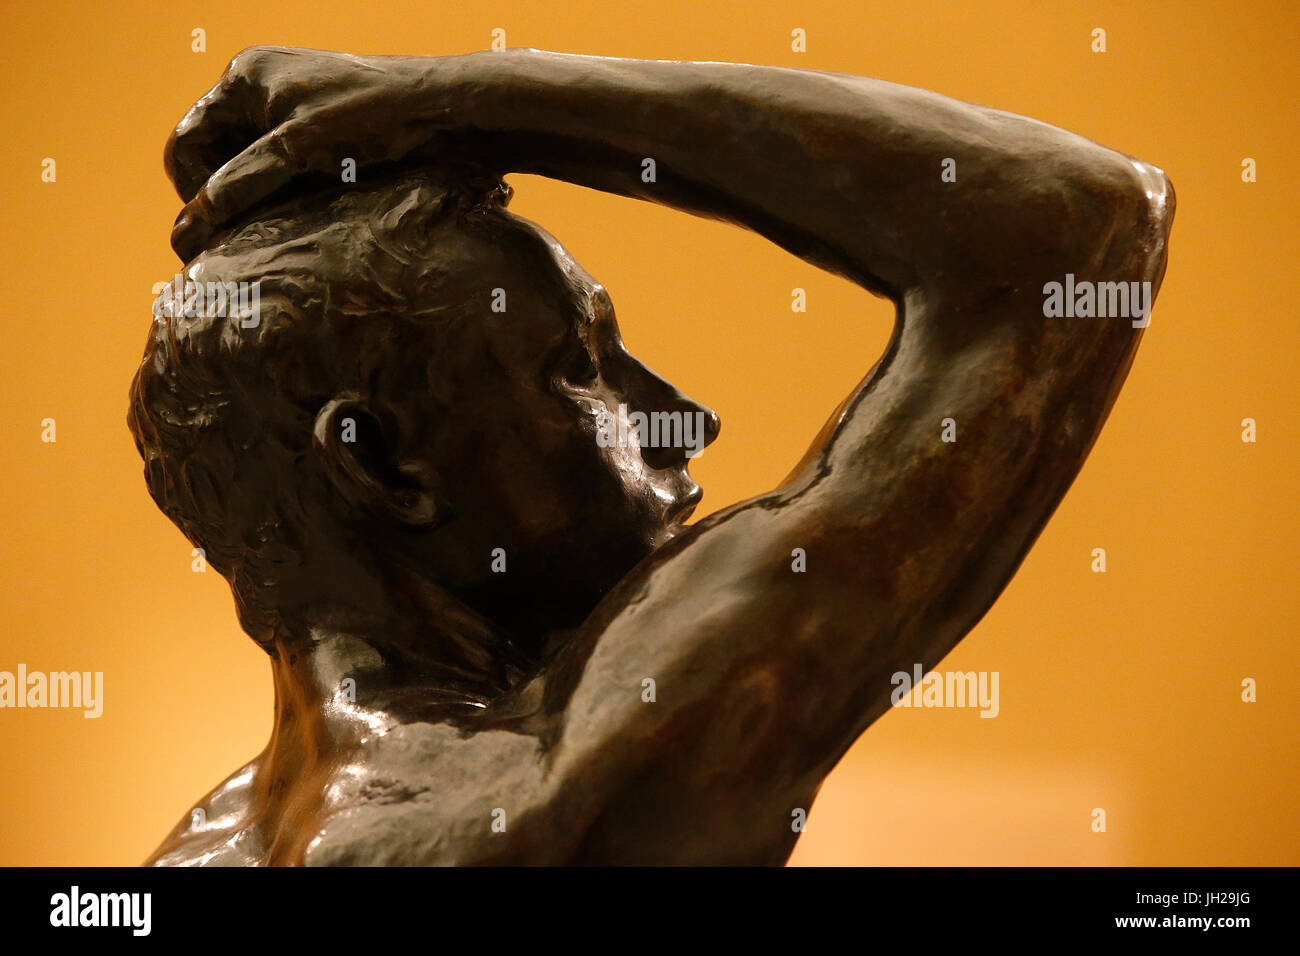 Das Victoria and Albert Museum. Auguste Rodin. Das Alter der Bronze. Bronze. Nach dem Vorbild etwa 1876, 1880 zuerst gegossen. Vereinigtes Königreich. Stockfoto